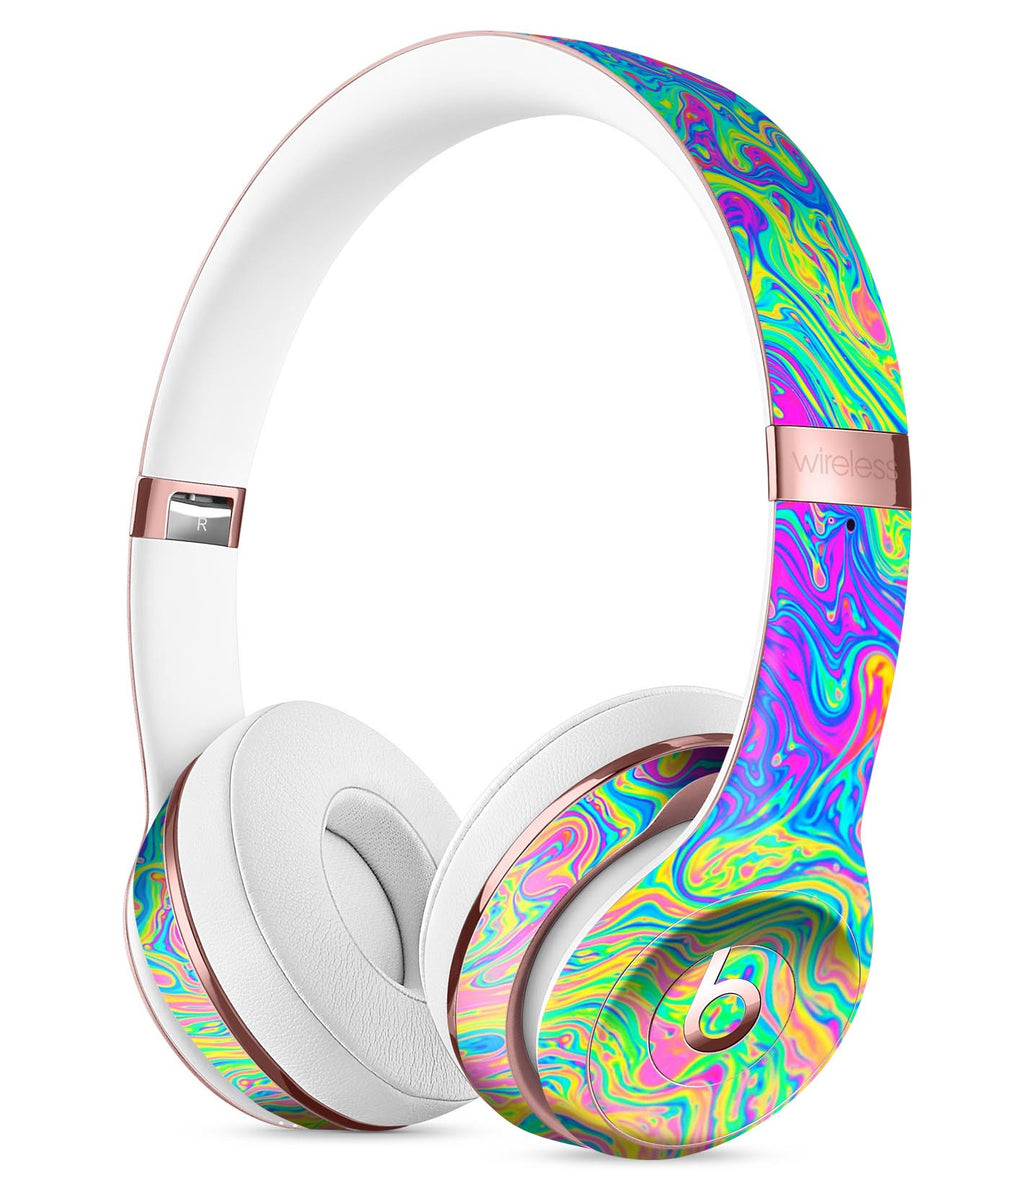 Наушники новые модели. Beats Studio 3. Beats solo 3 цвета. Neon Color Swirls v2 Full-body Skin Kit for the Beats by Dre solo 3 Wireless Headphones. Битс студио наушники детские.